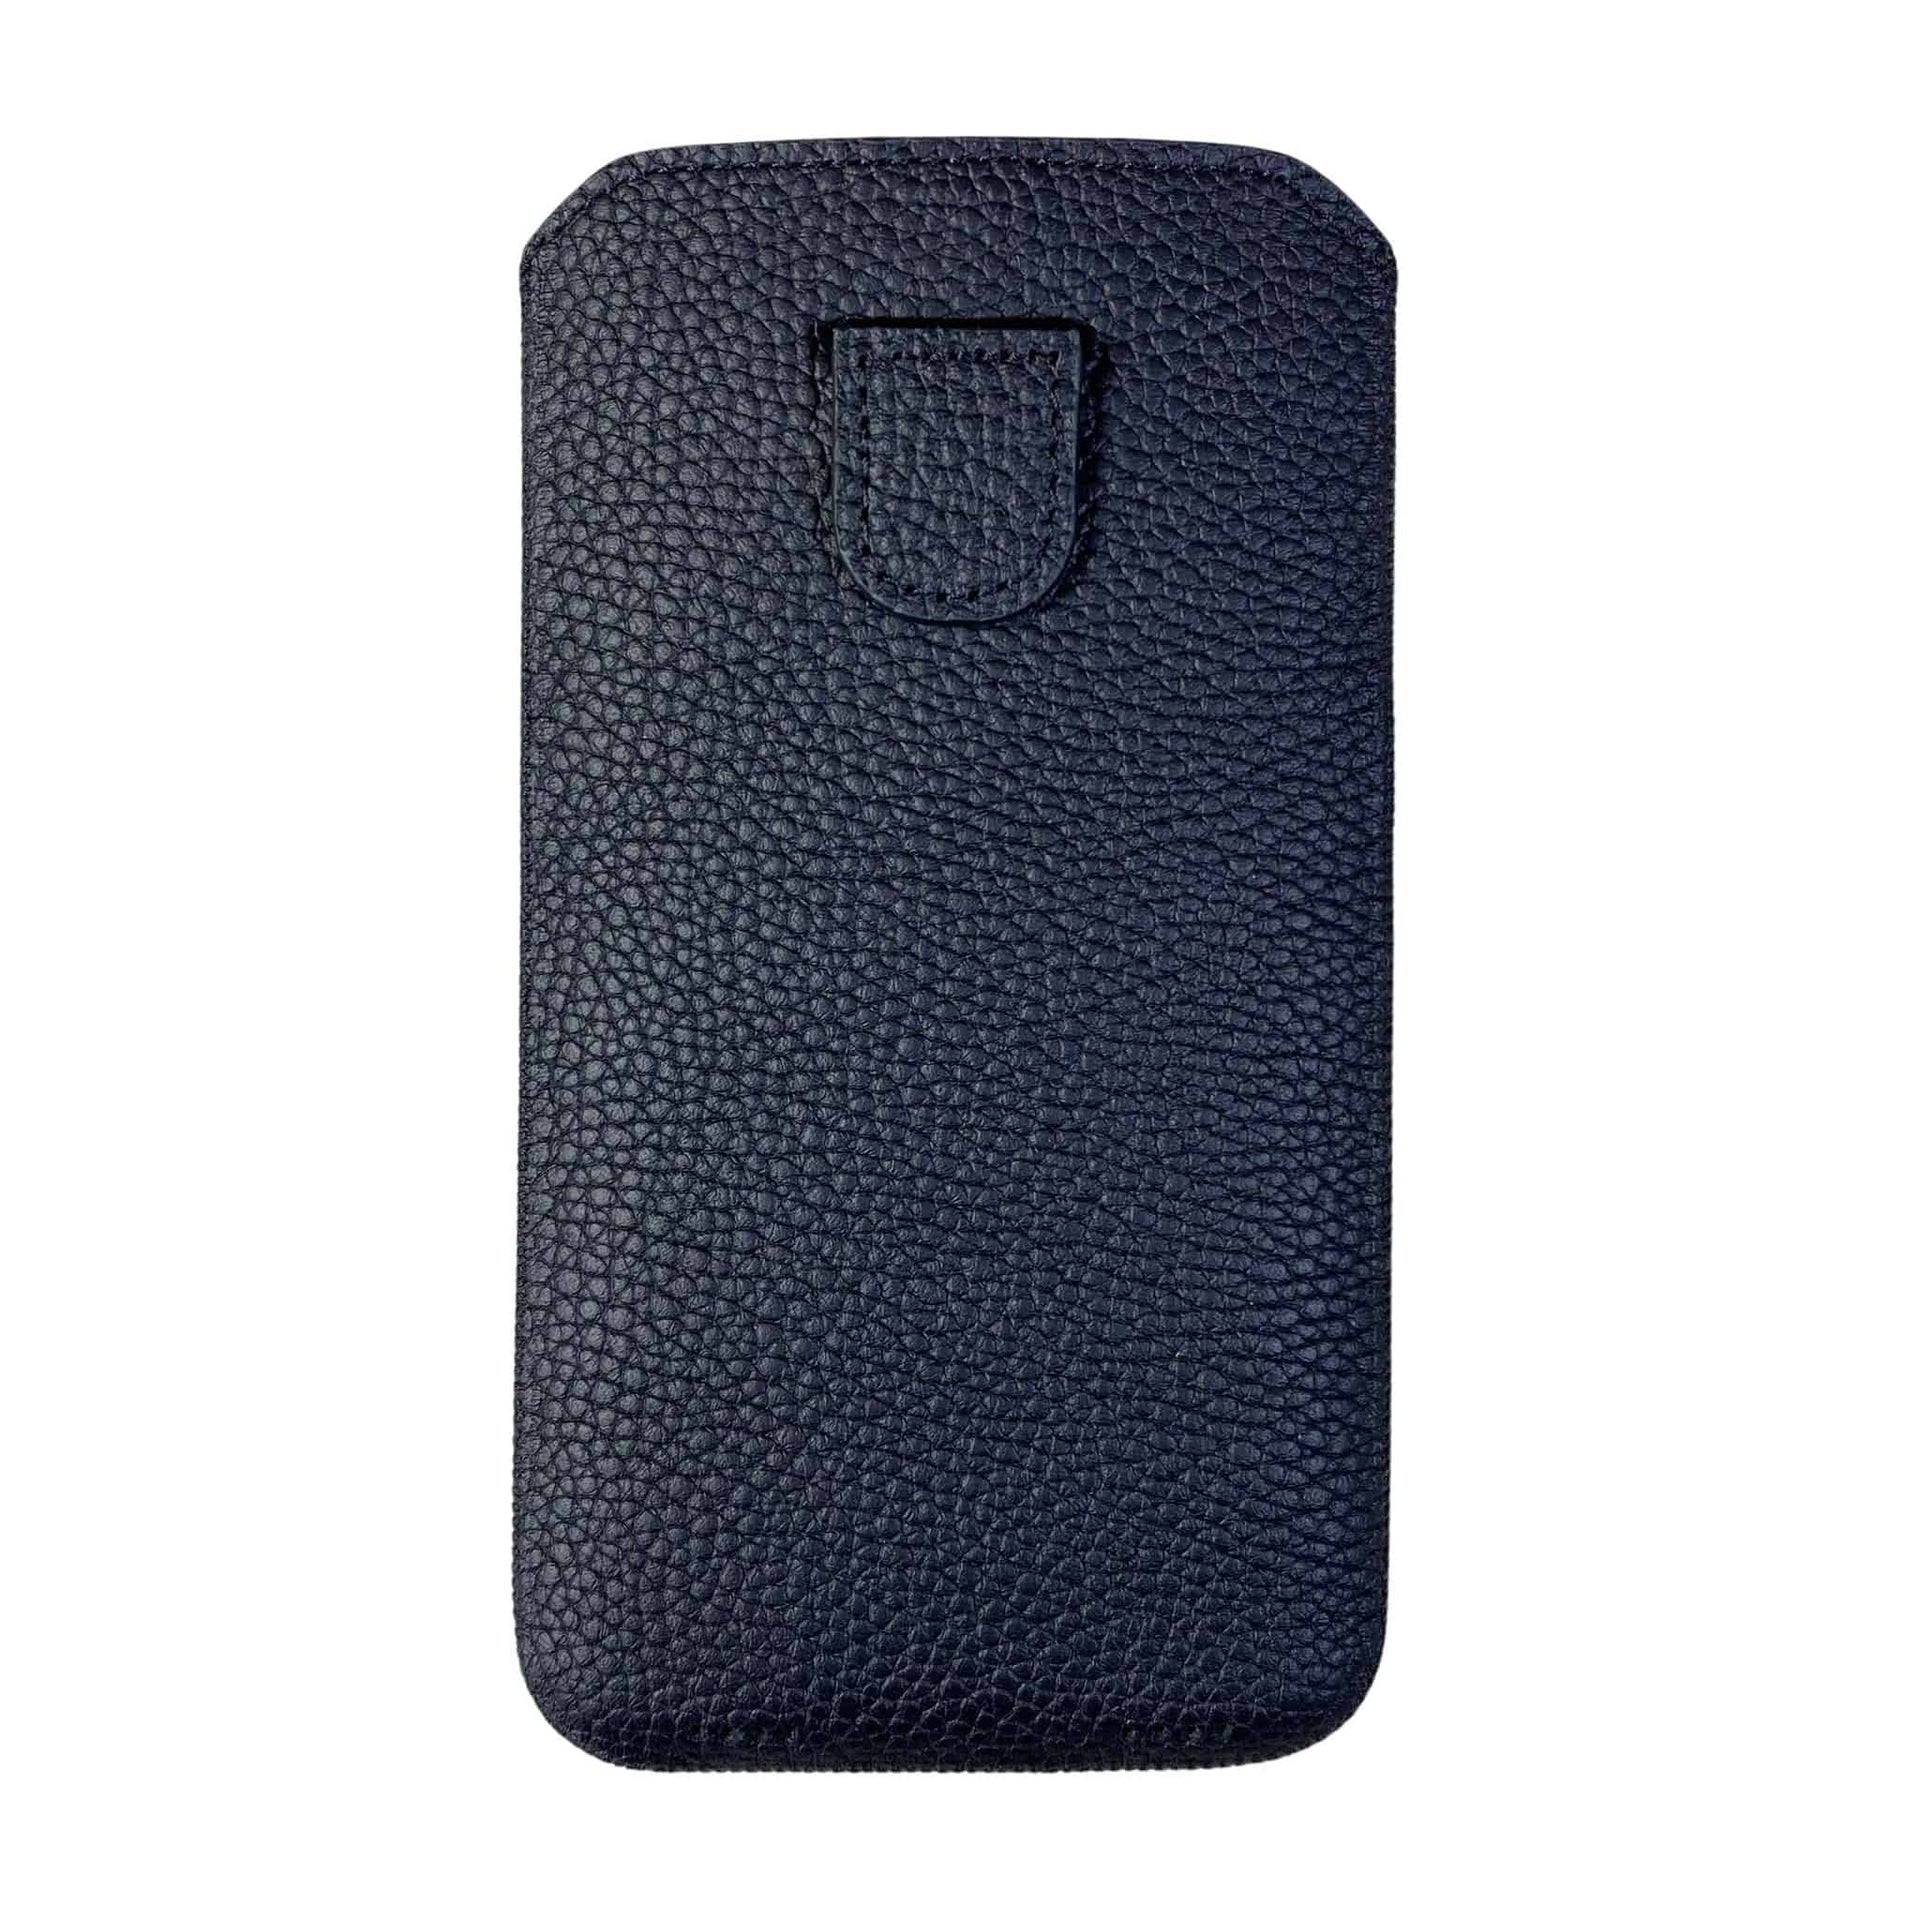 Samsung Galaxy S23 Plus Louis Vuitton Leather Case – elefcases